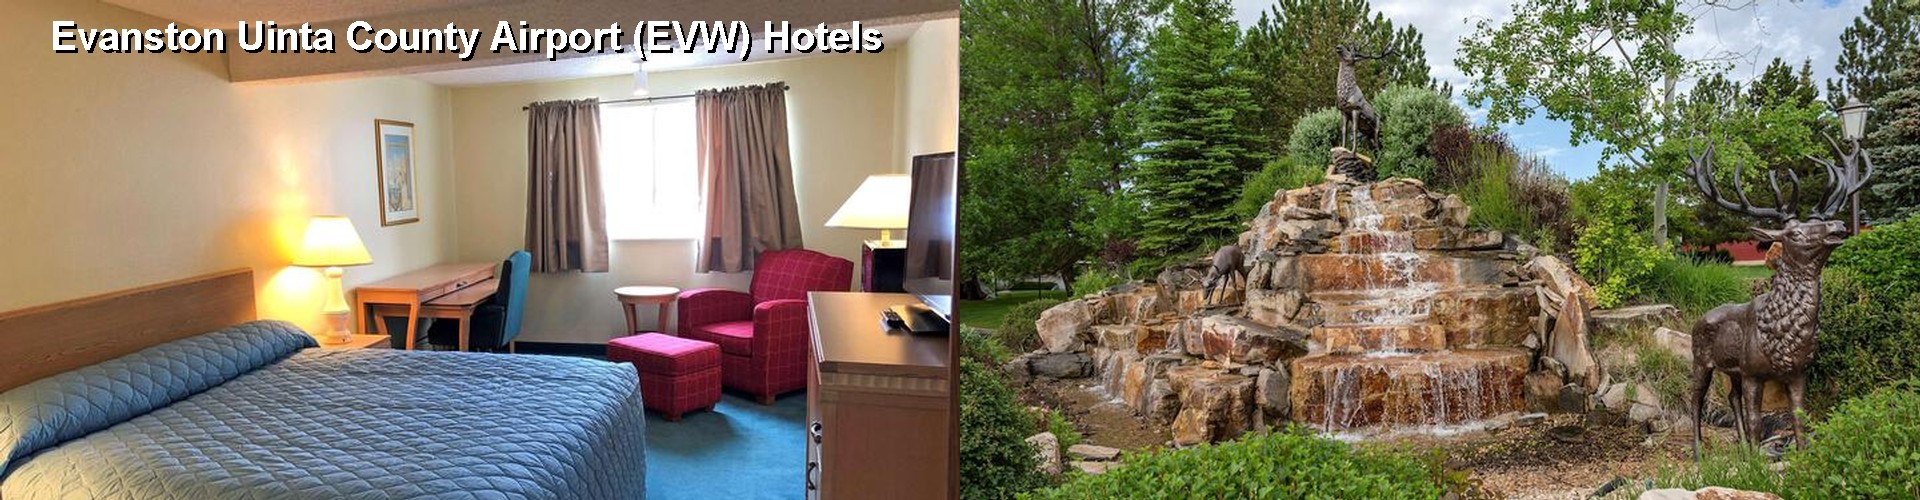 3 Best Hotels near Evanston Uinta County Airport (EVW)